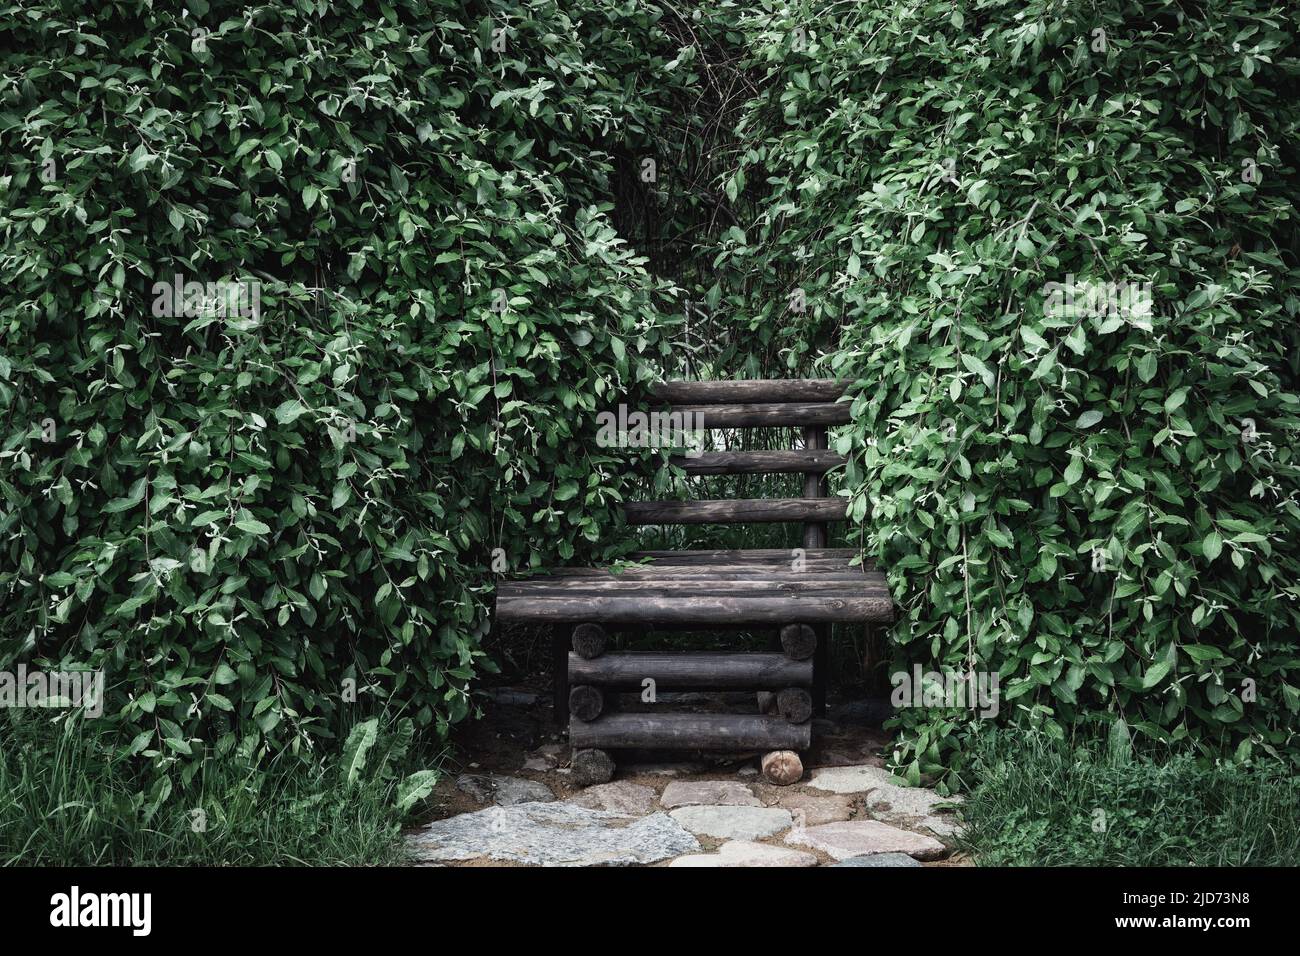 Banco de jardín de madera vintage en el verde denso follaje de arbustos. Foto de stock